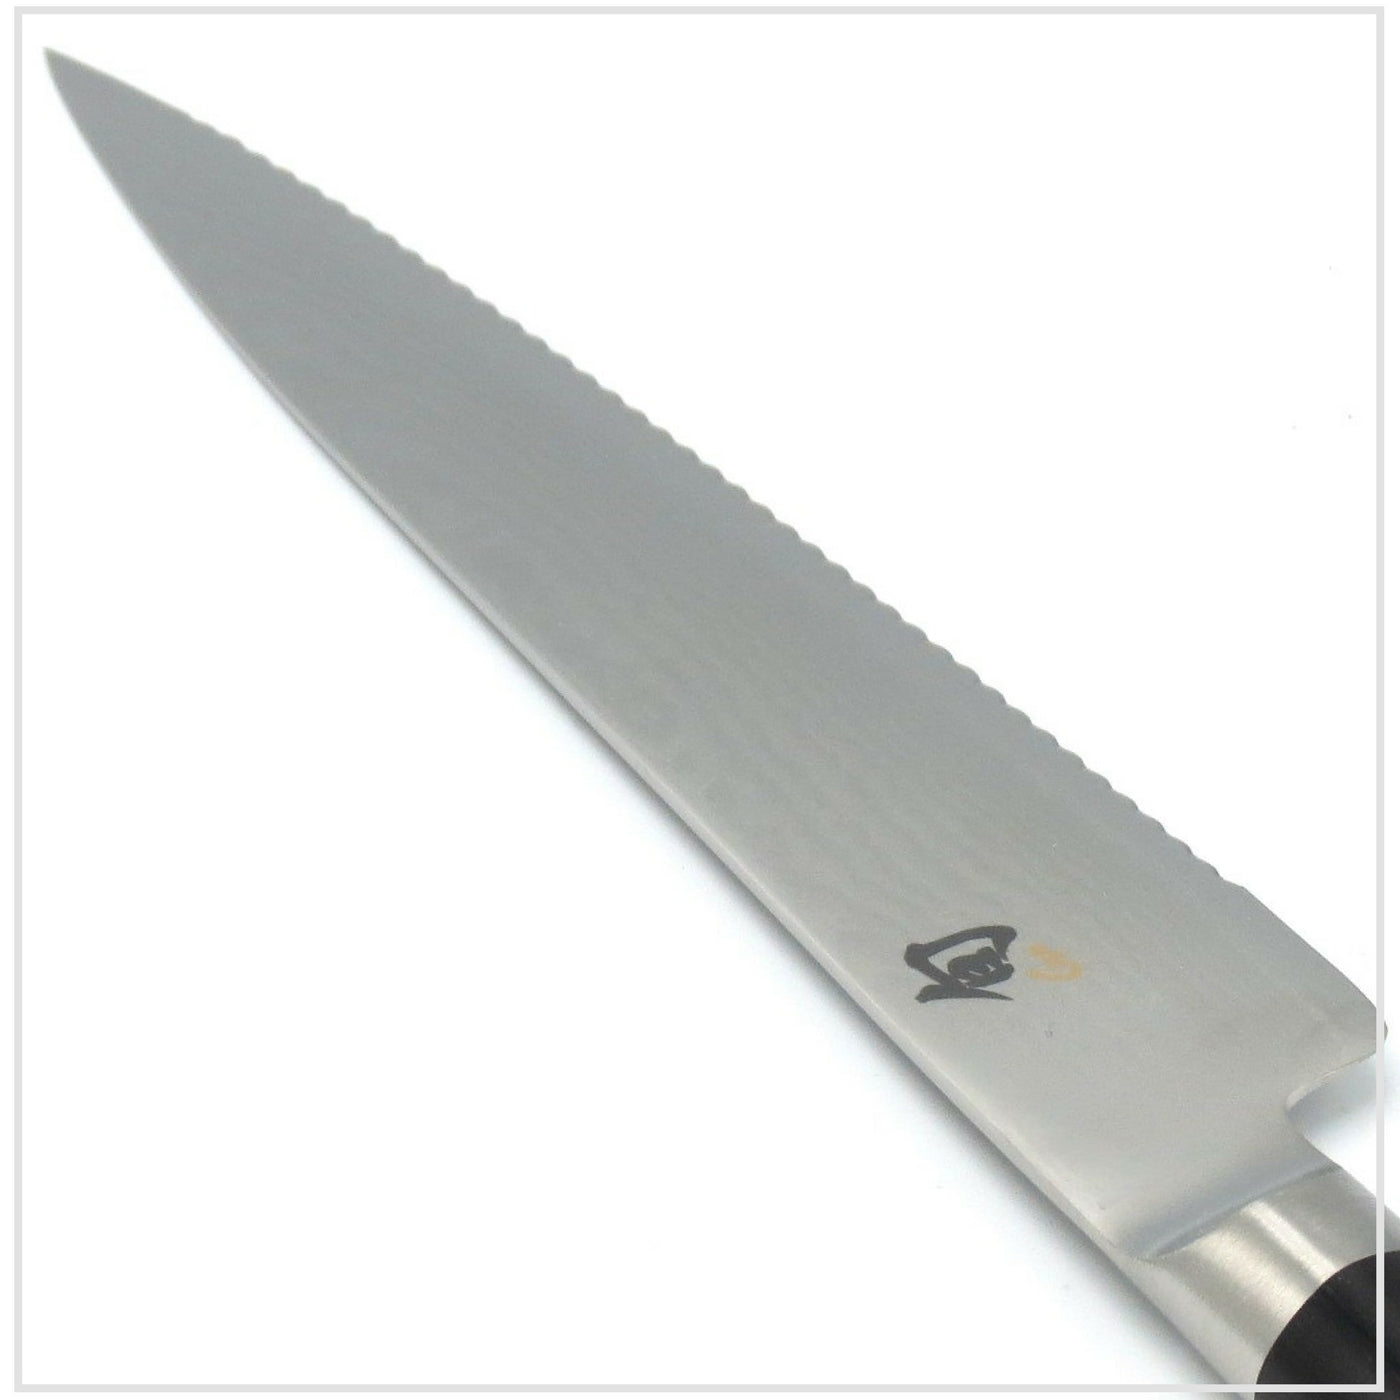 KAI SHUN Tomato Knife 15cm